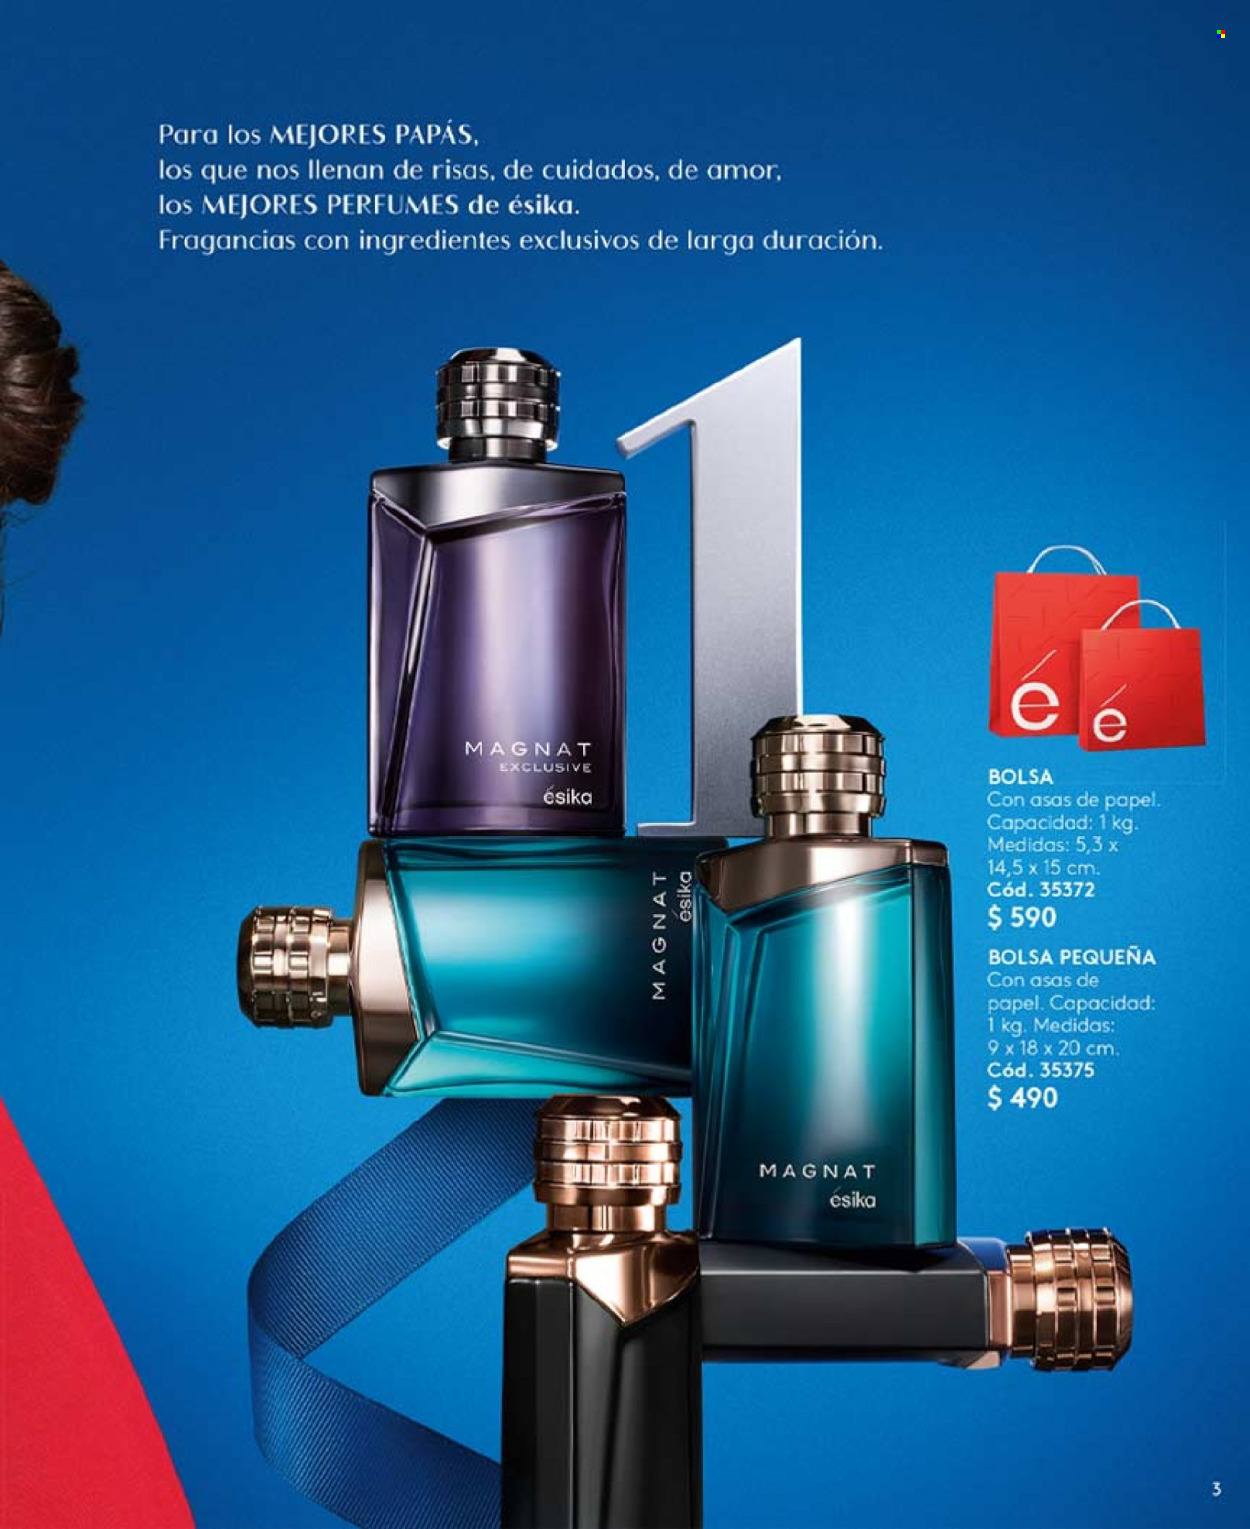 thumbnail - Catálogo Ésika - Ventas - perfume. Página 3.